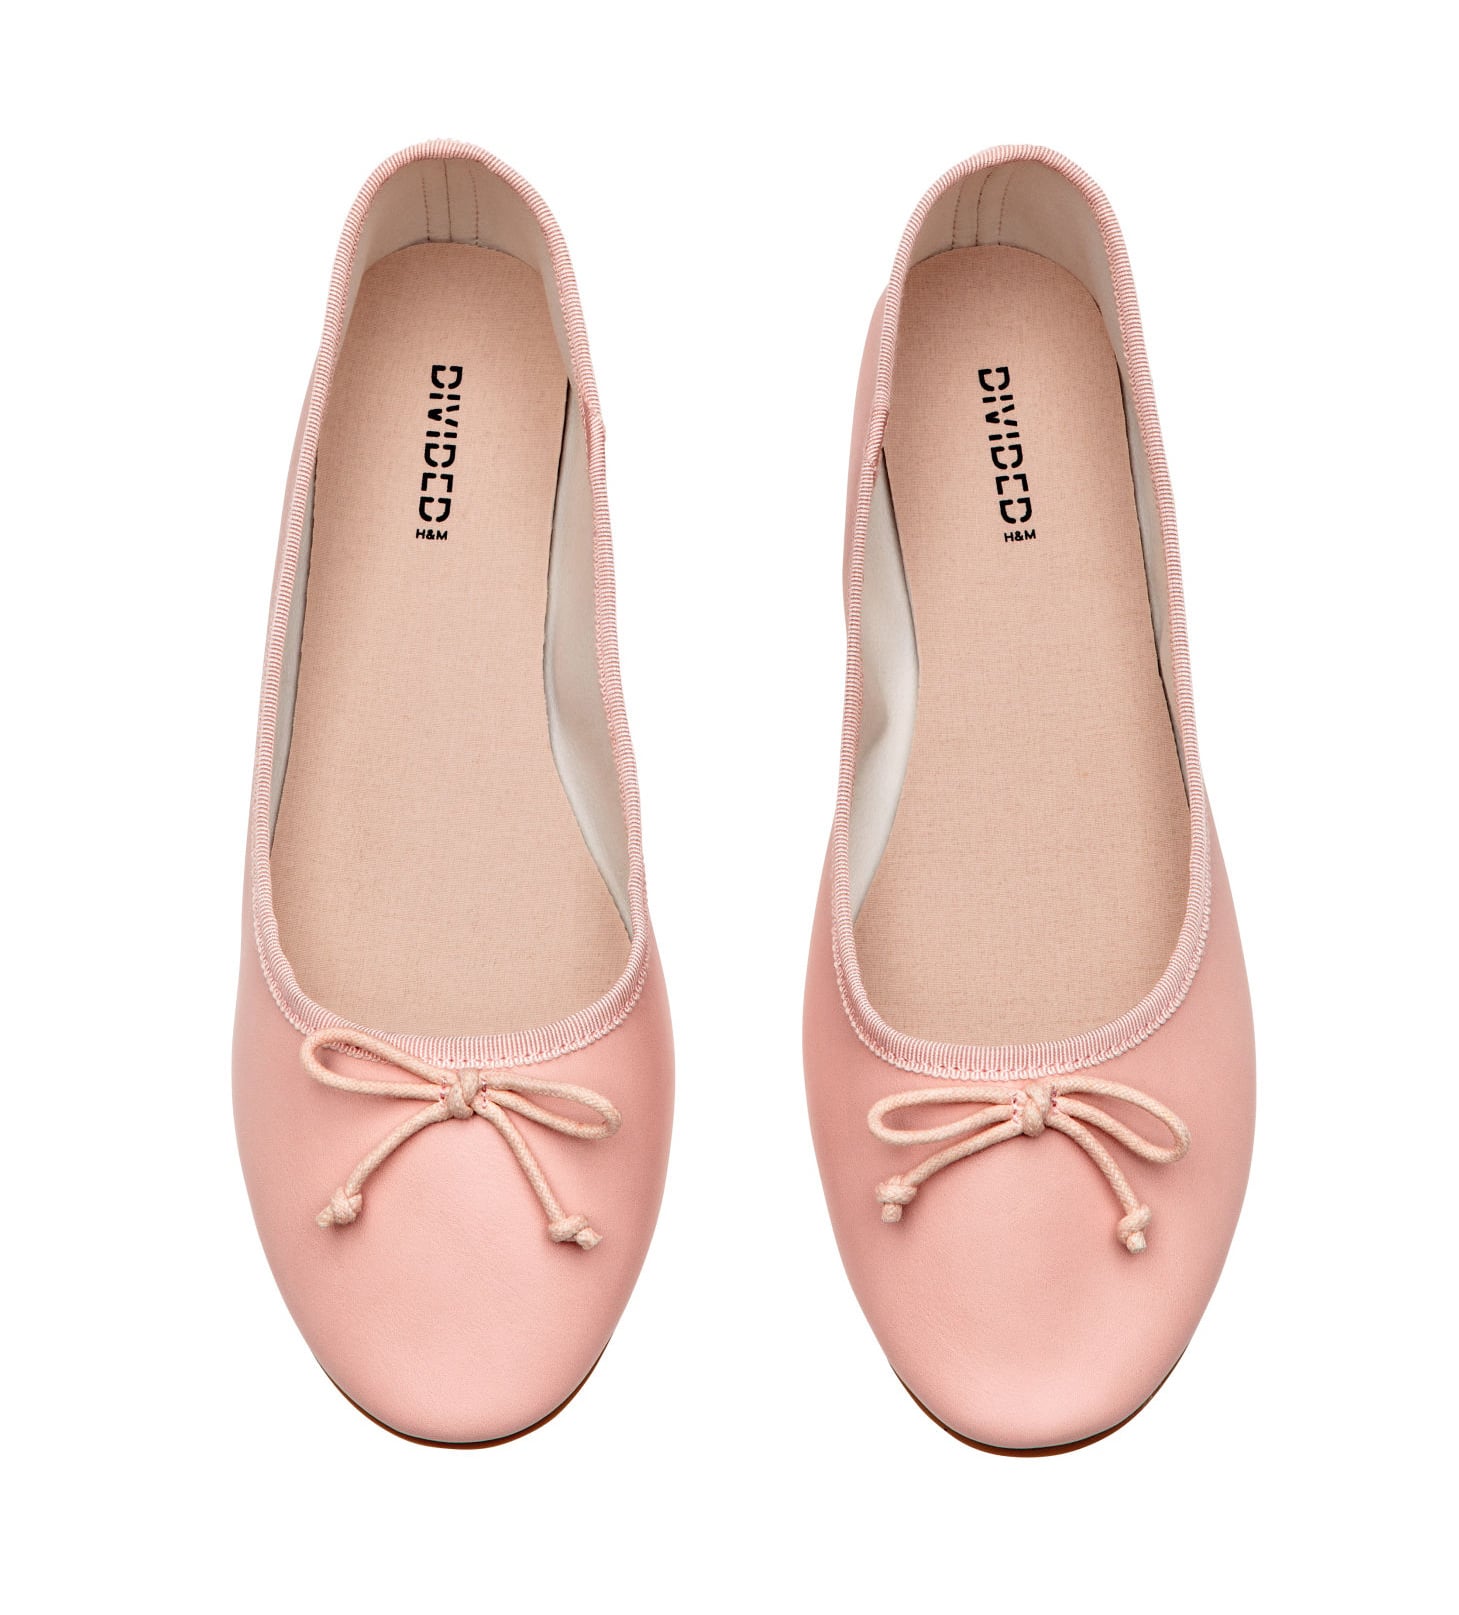 h&m ballet shoes